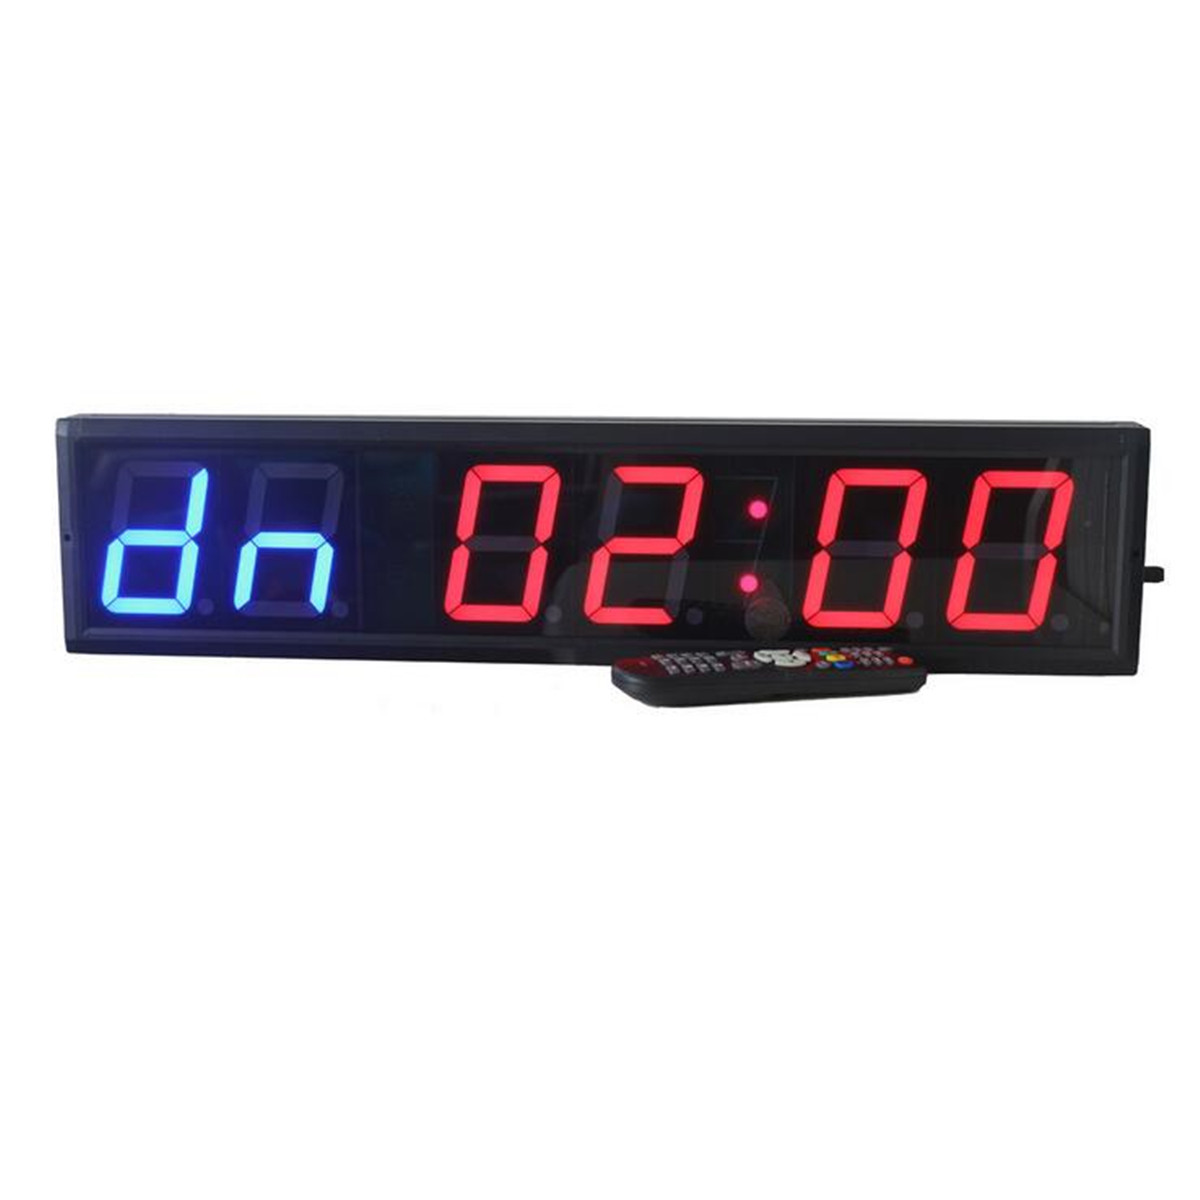 

4 дюймов GYM Crossfit Timer Часы LED Интервальное время тренировки таймера и время отдыха Альтернативный обратный отсчетСчитать как секундомер